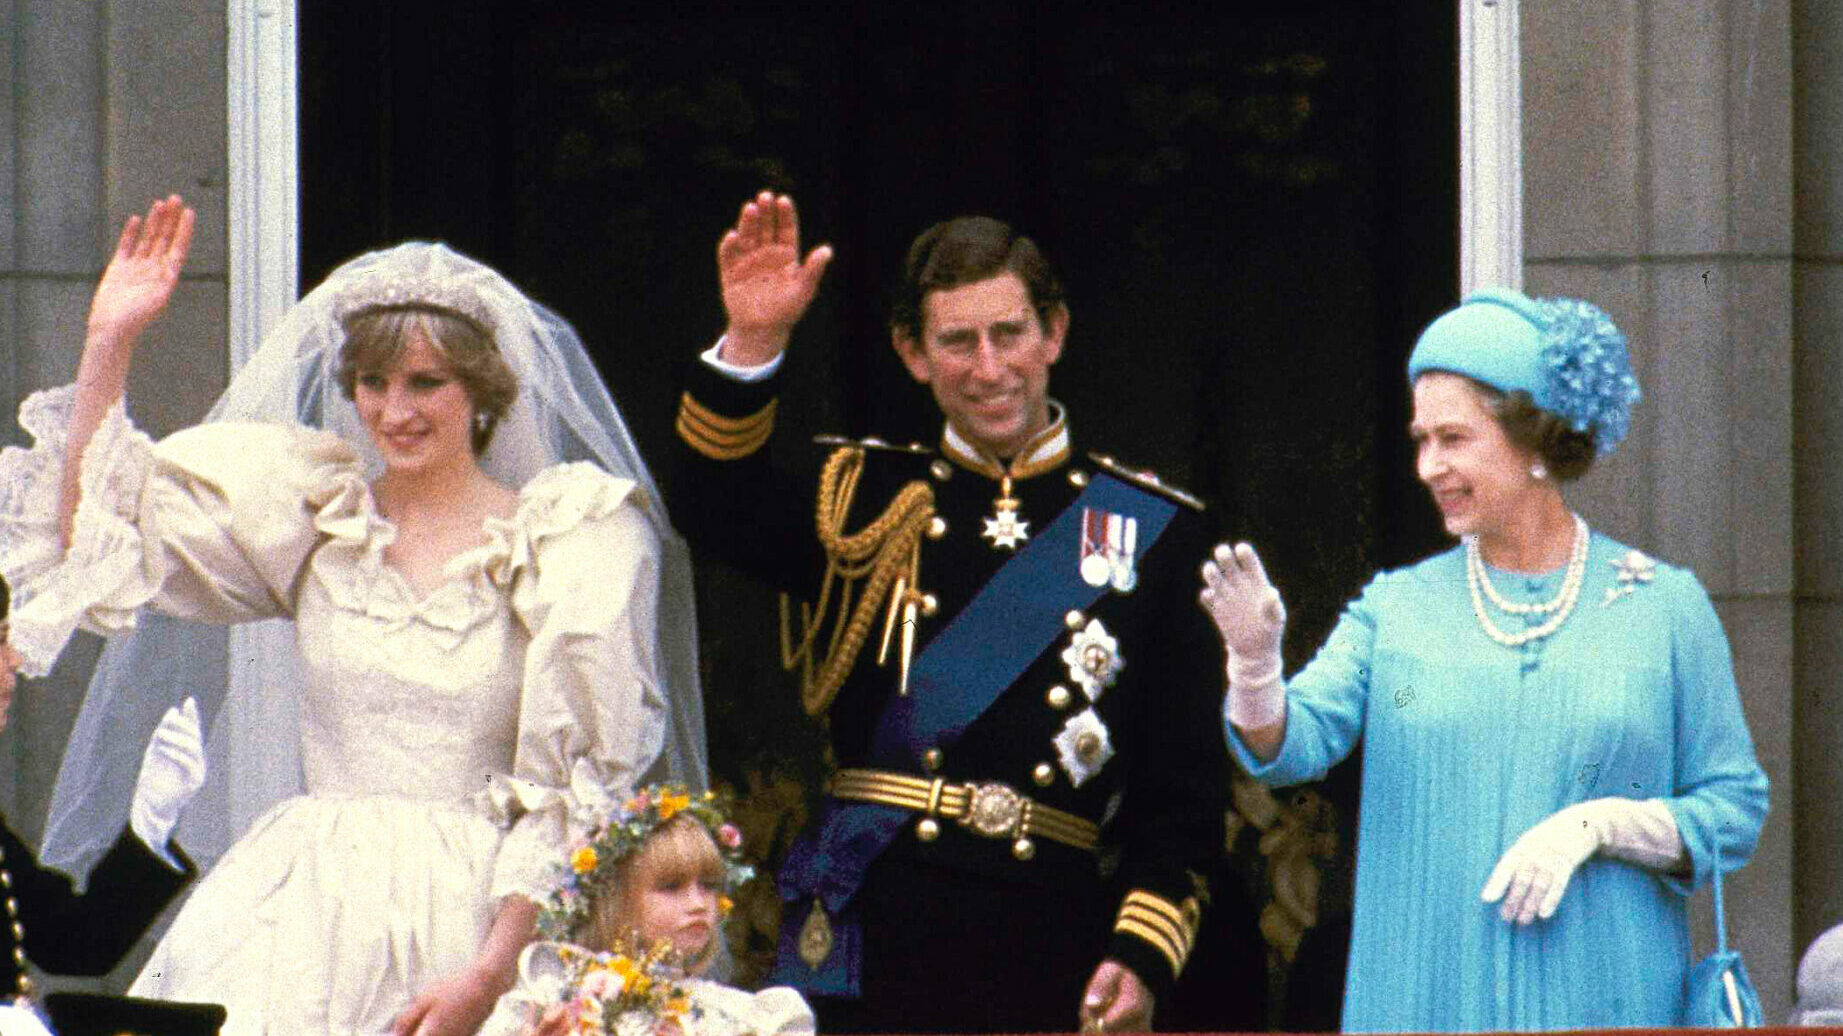 La boda del príncipe Carlos y Lady Di